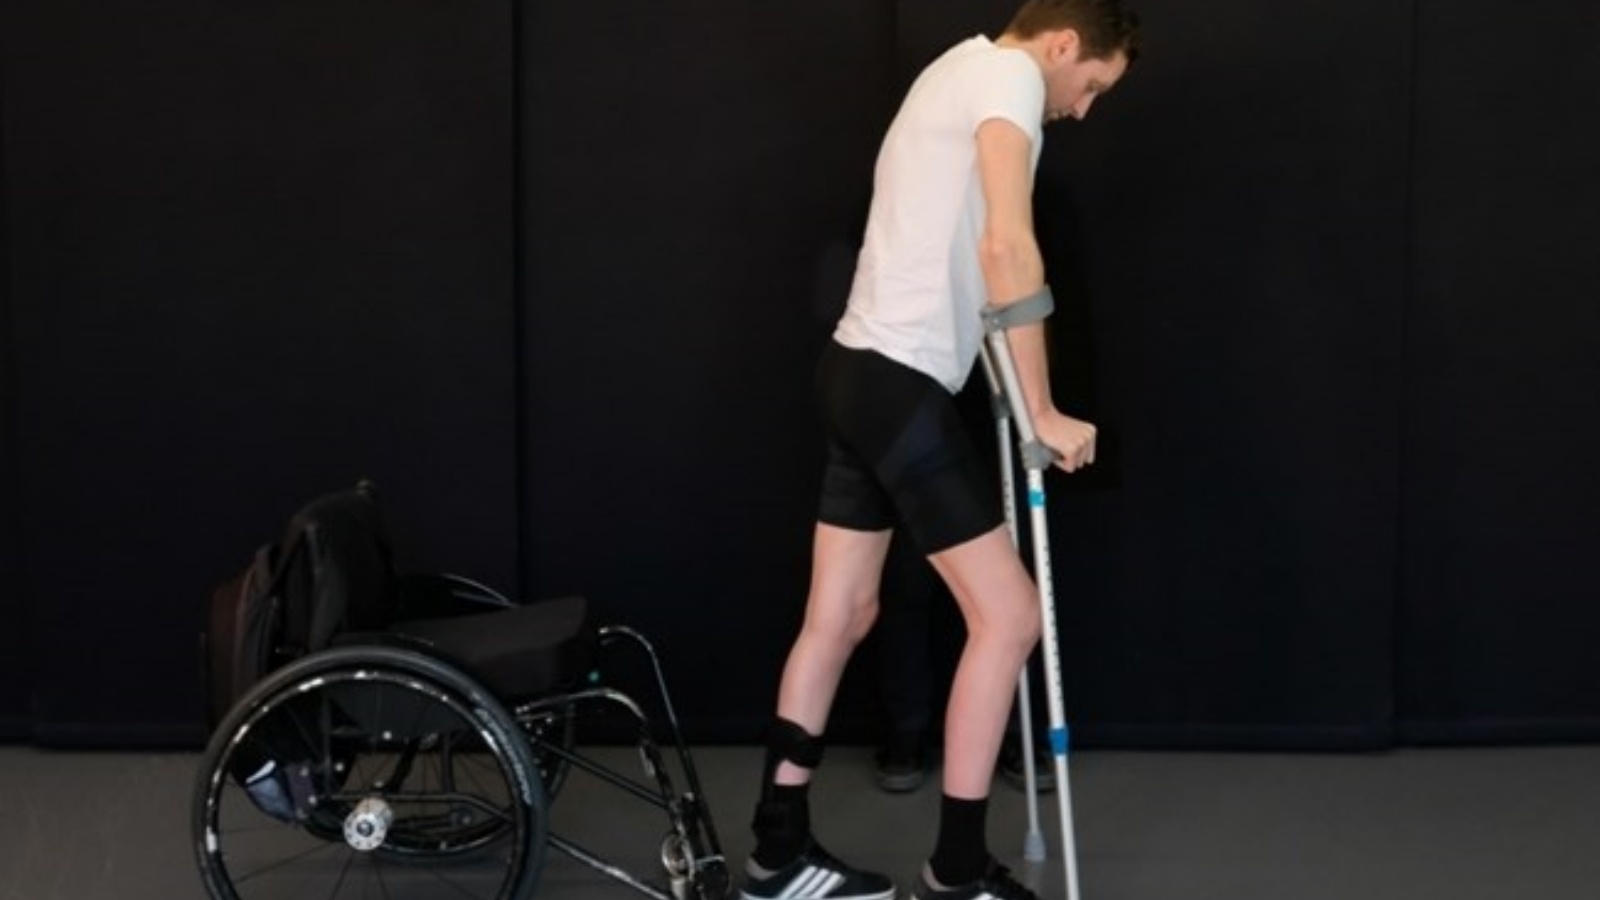 رجل يعاني من الشلل، استعاد جزئيًاً القدرة على المشي. (توضيحية)